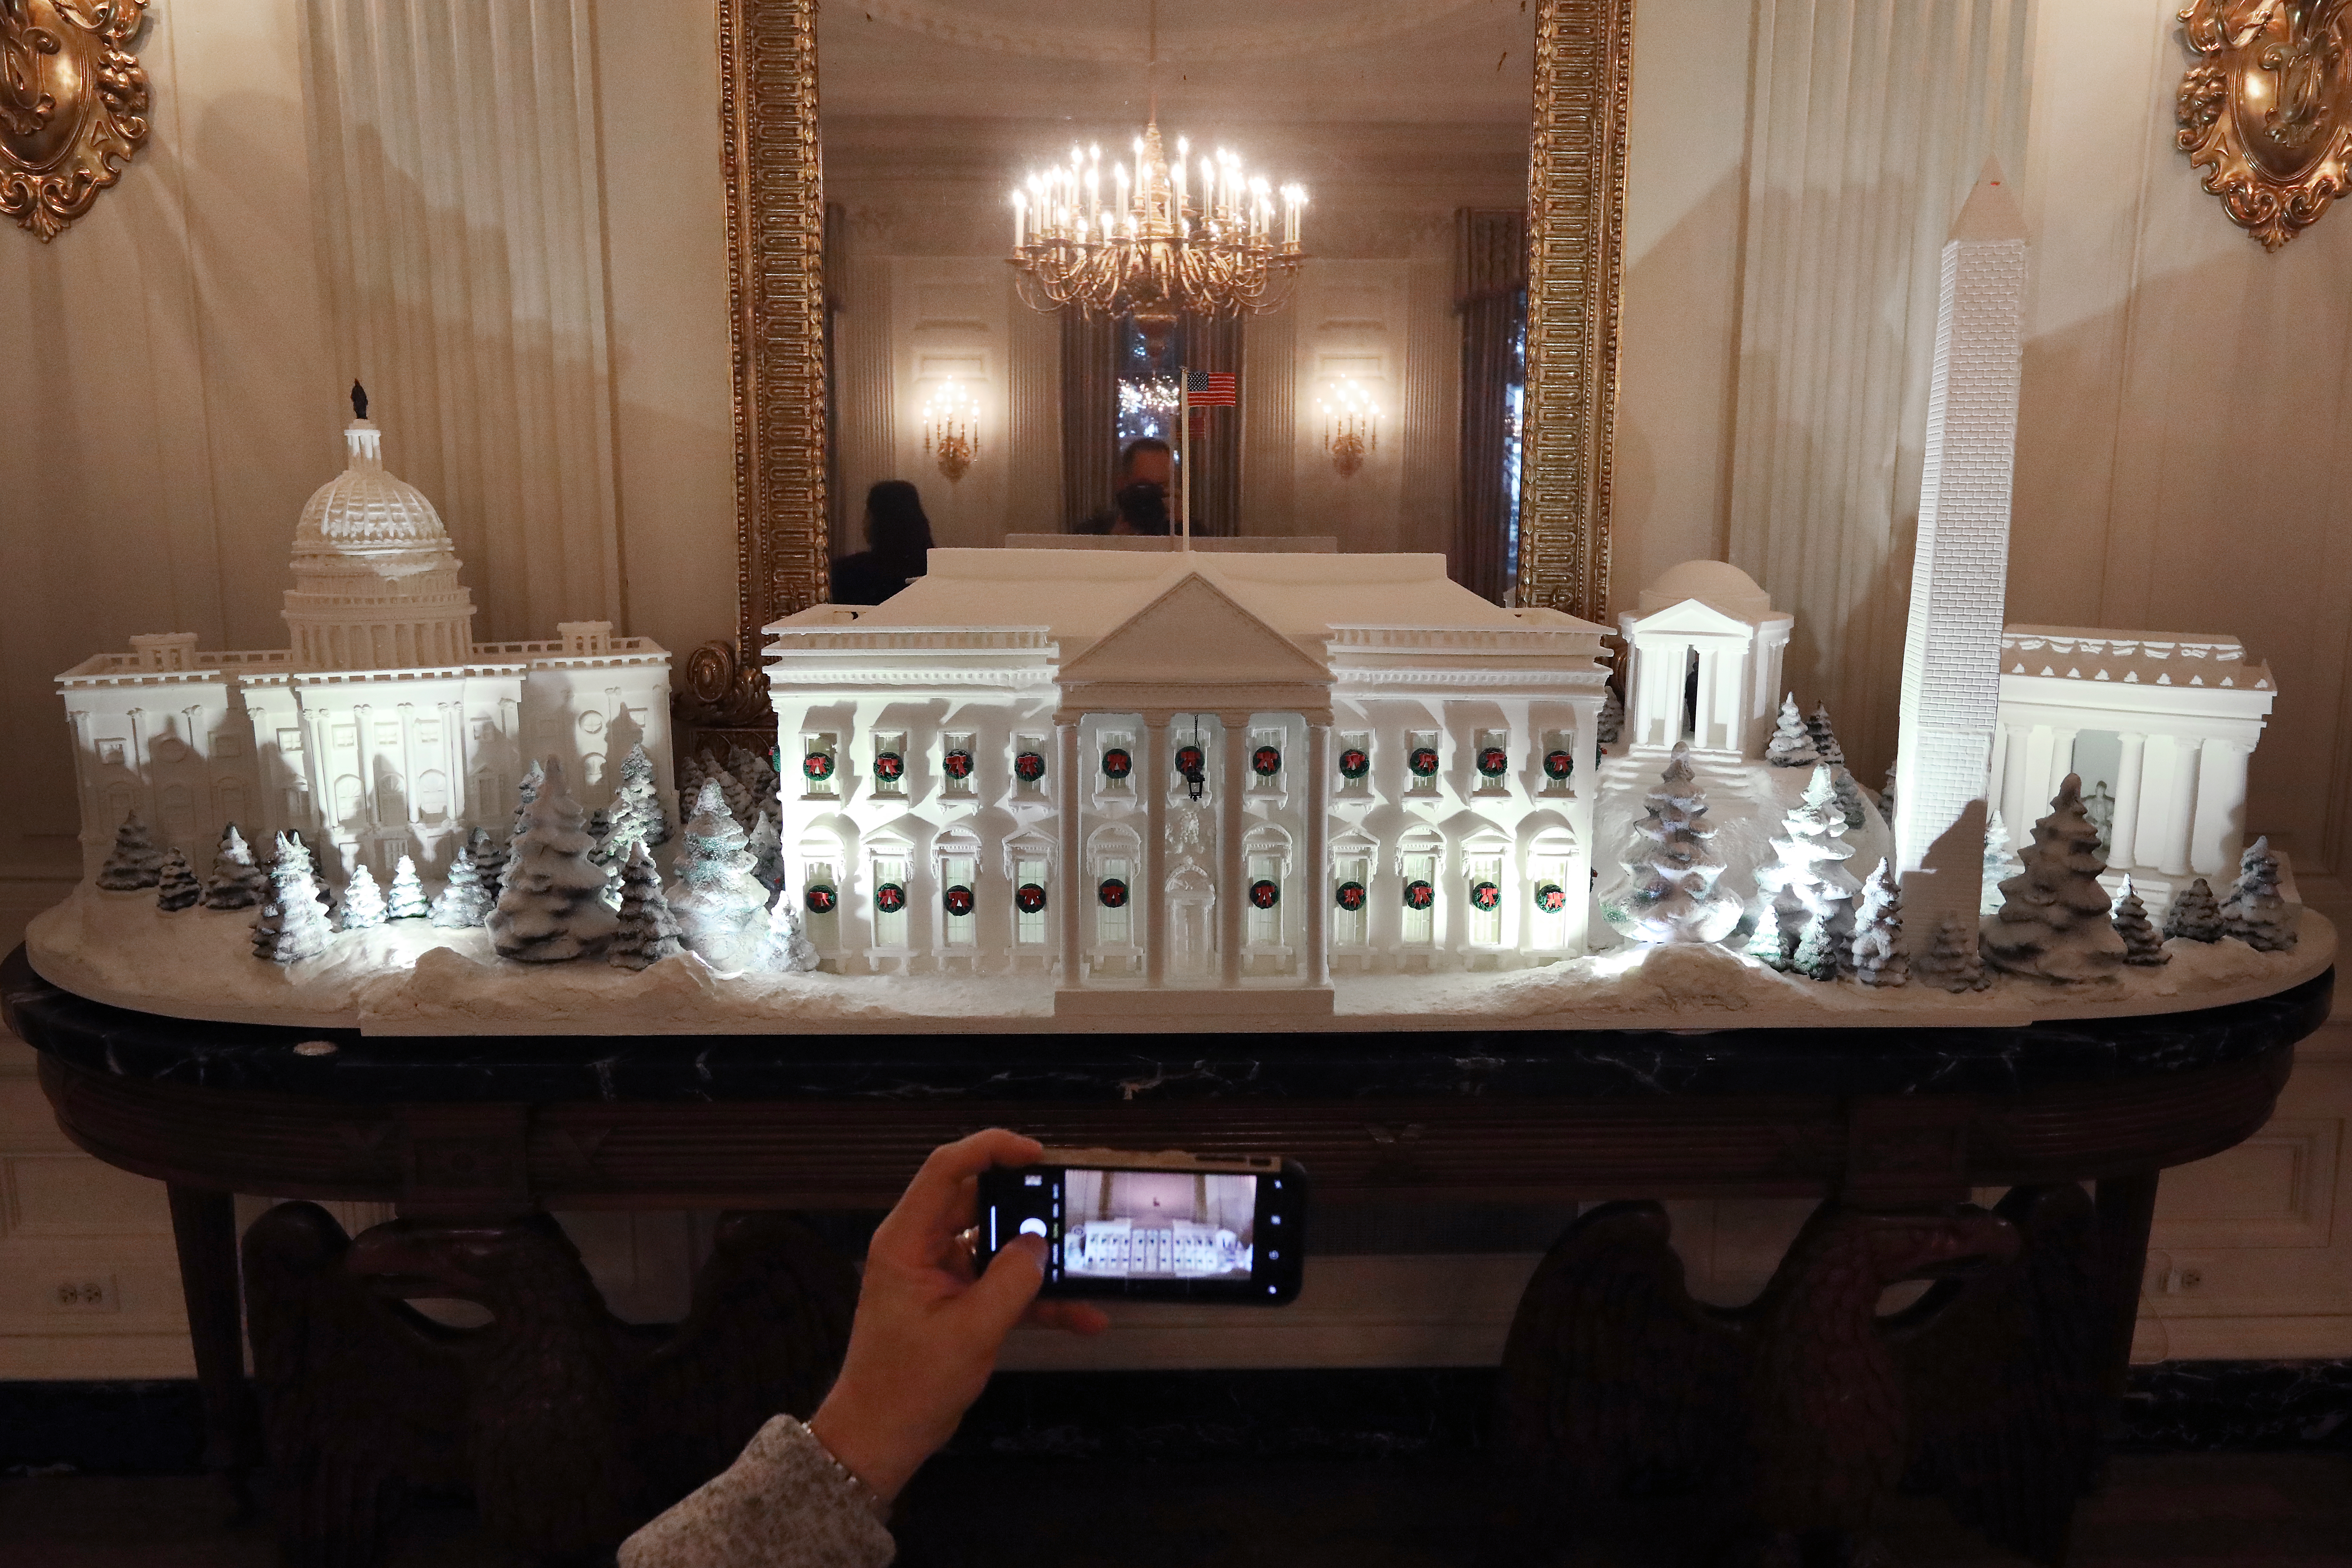 Първата дама на САЩ Мелания Тръмп представи тазгодишната коледна украса на Белия дом, като декорът й е вдъхновен от лайтмотива "Съкровищата на Америка".